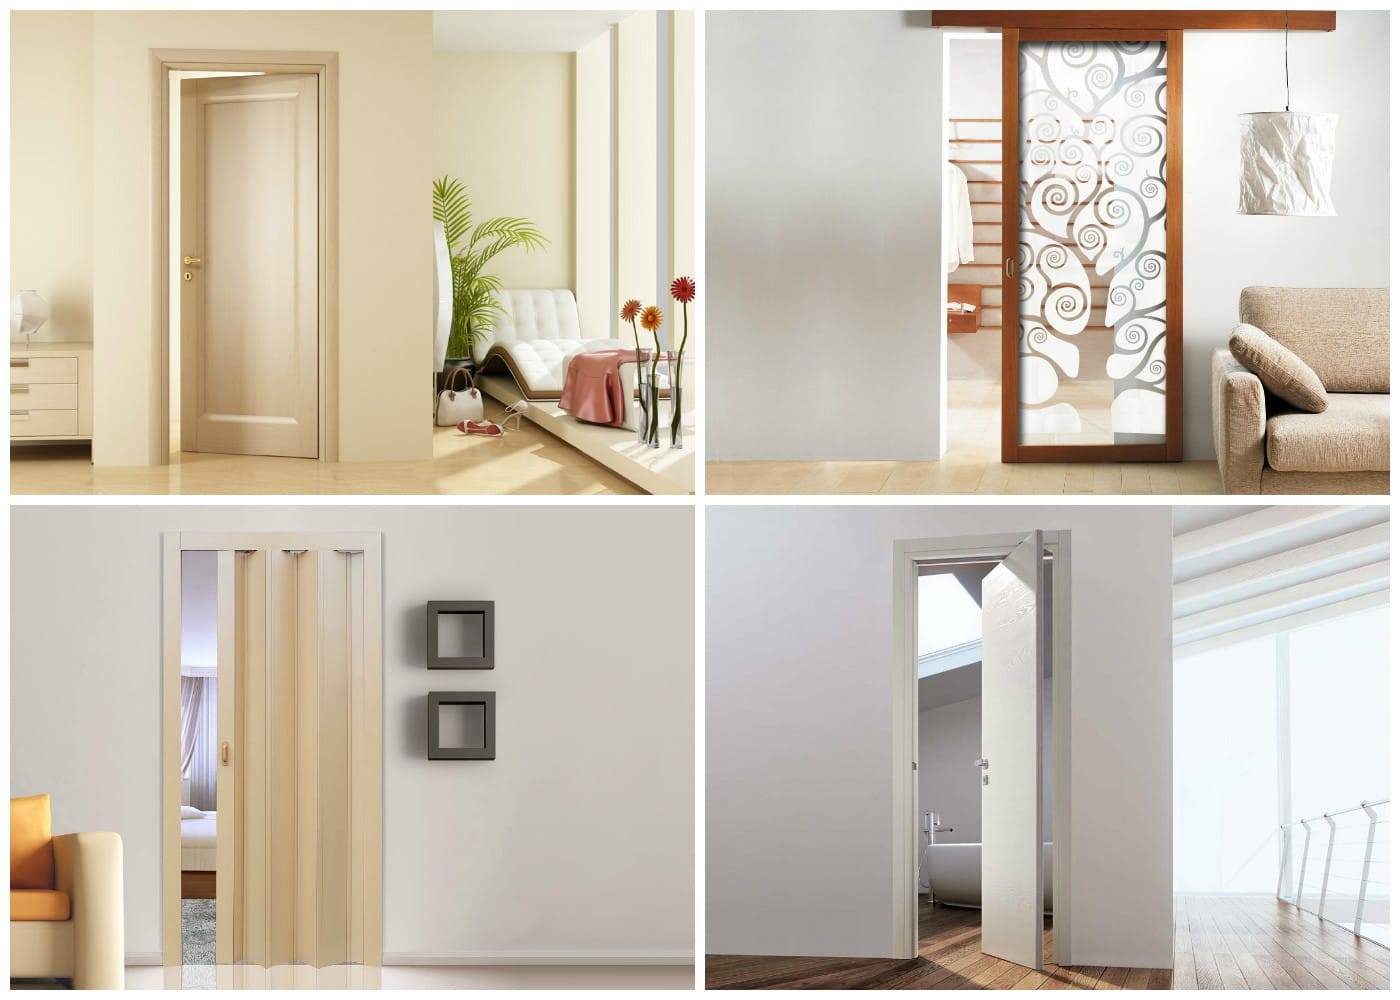 Нестандартные межкомнатные двери: выбор типа и формы двери